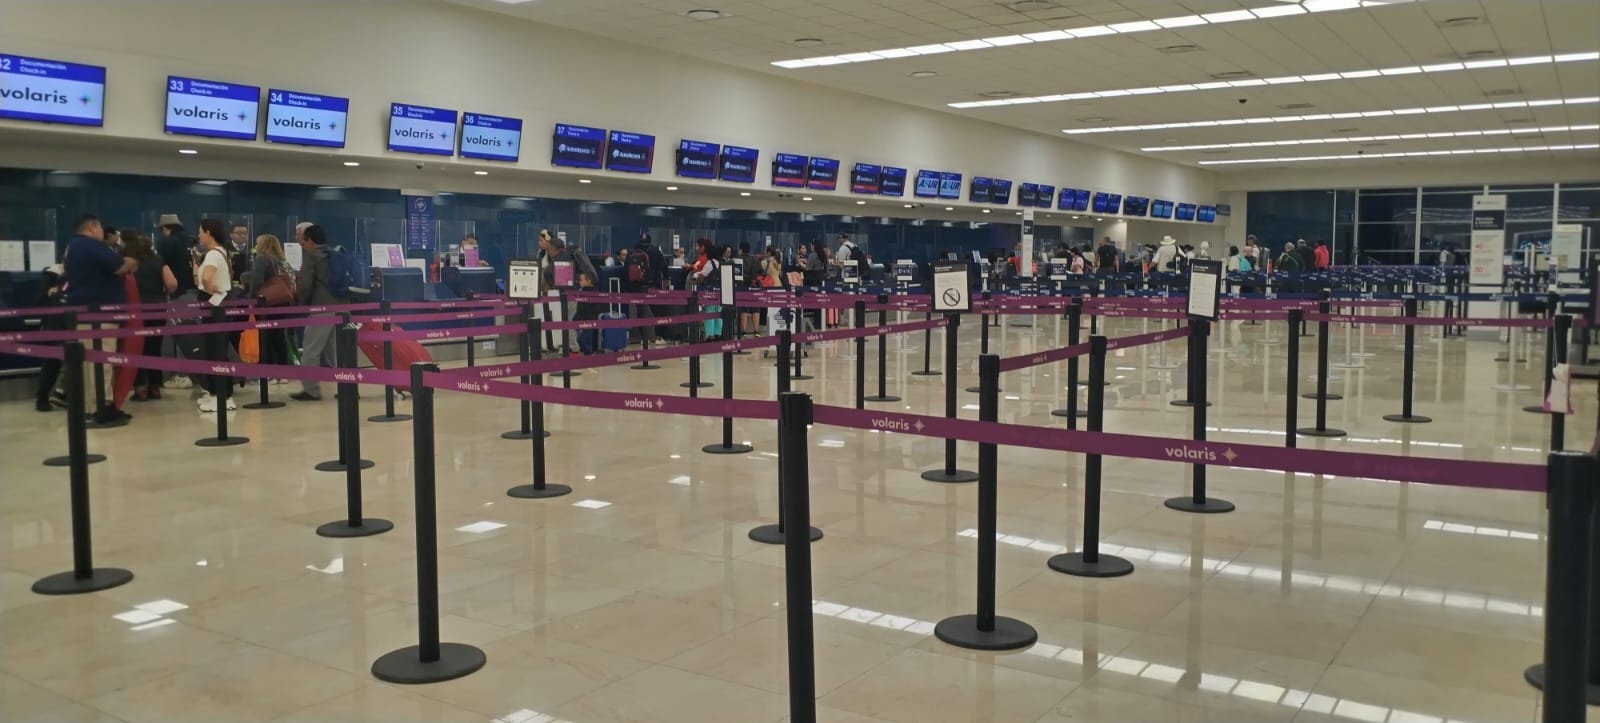 Son vuelos cancelados, siete adelantados y seis atrasados en la jornada de este miércoles en el aeropuerto de Mérida